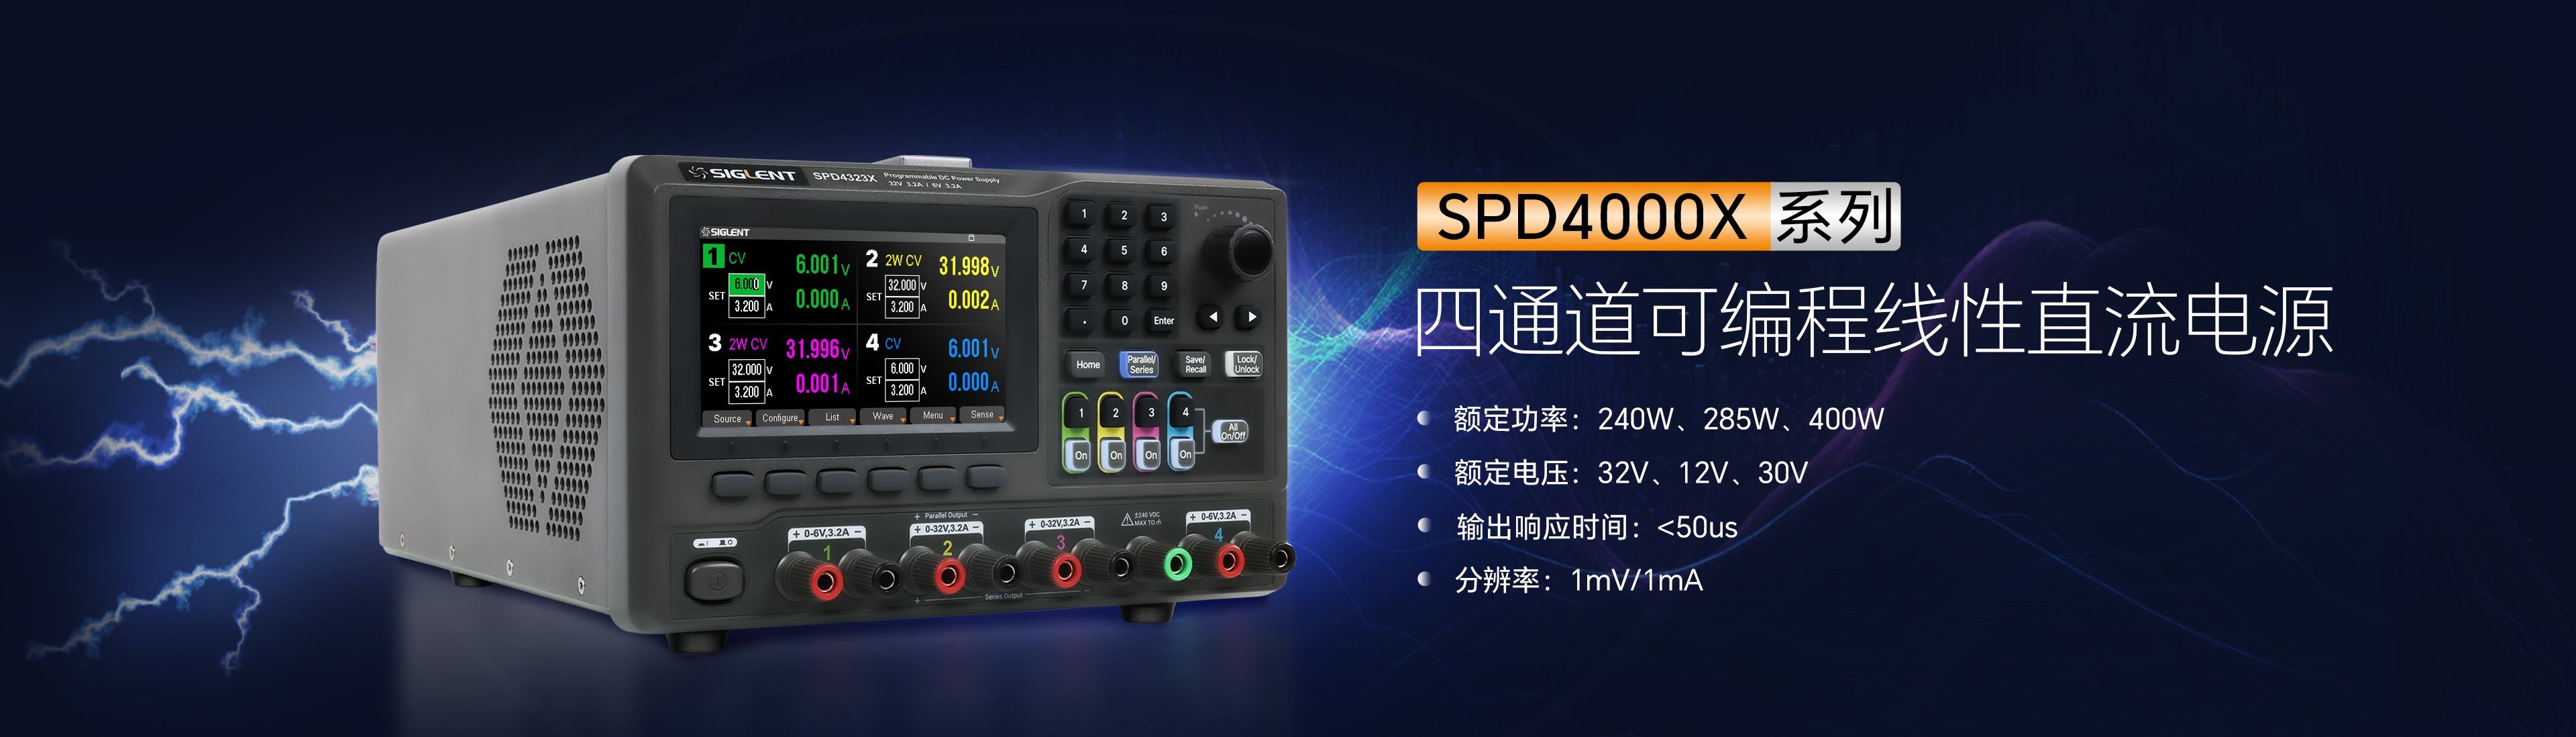 鼎阳科技SPD4000X